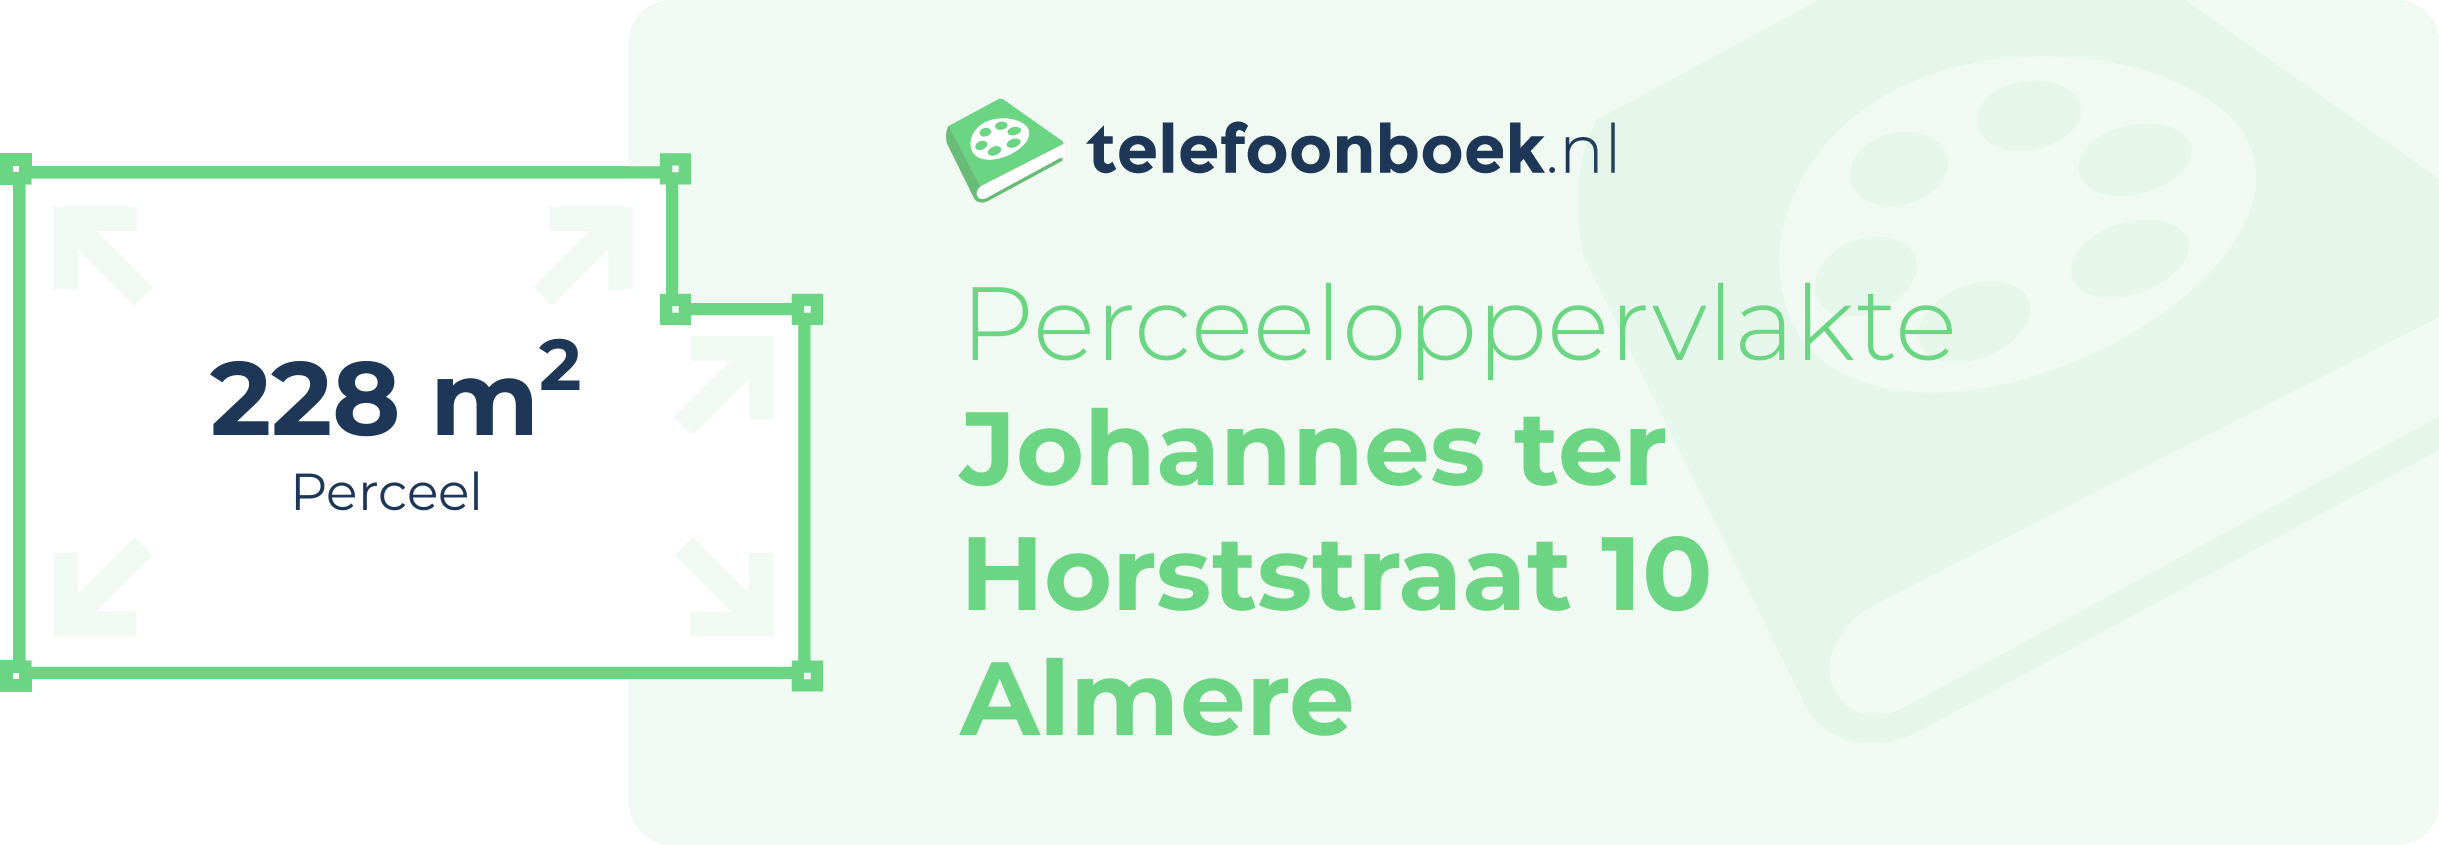 Perceeloppervlakte Johannes Ter Horststraat 10 Almere